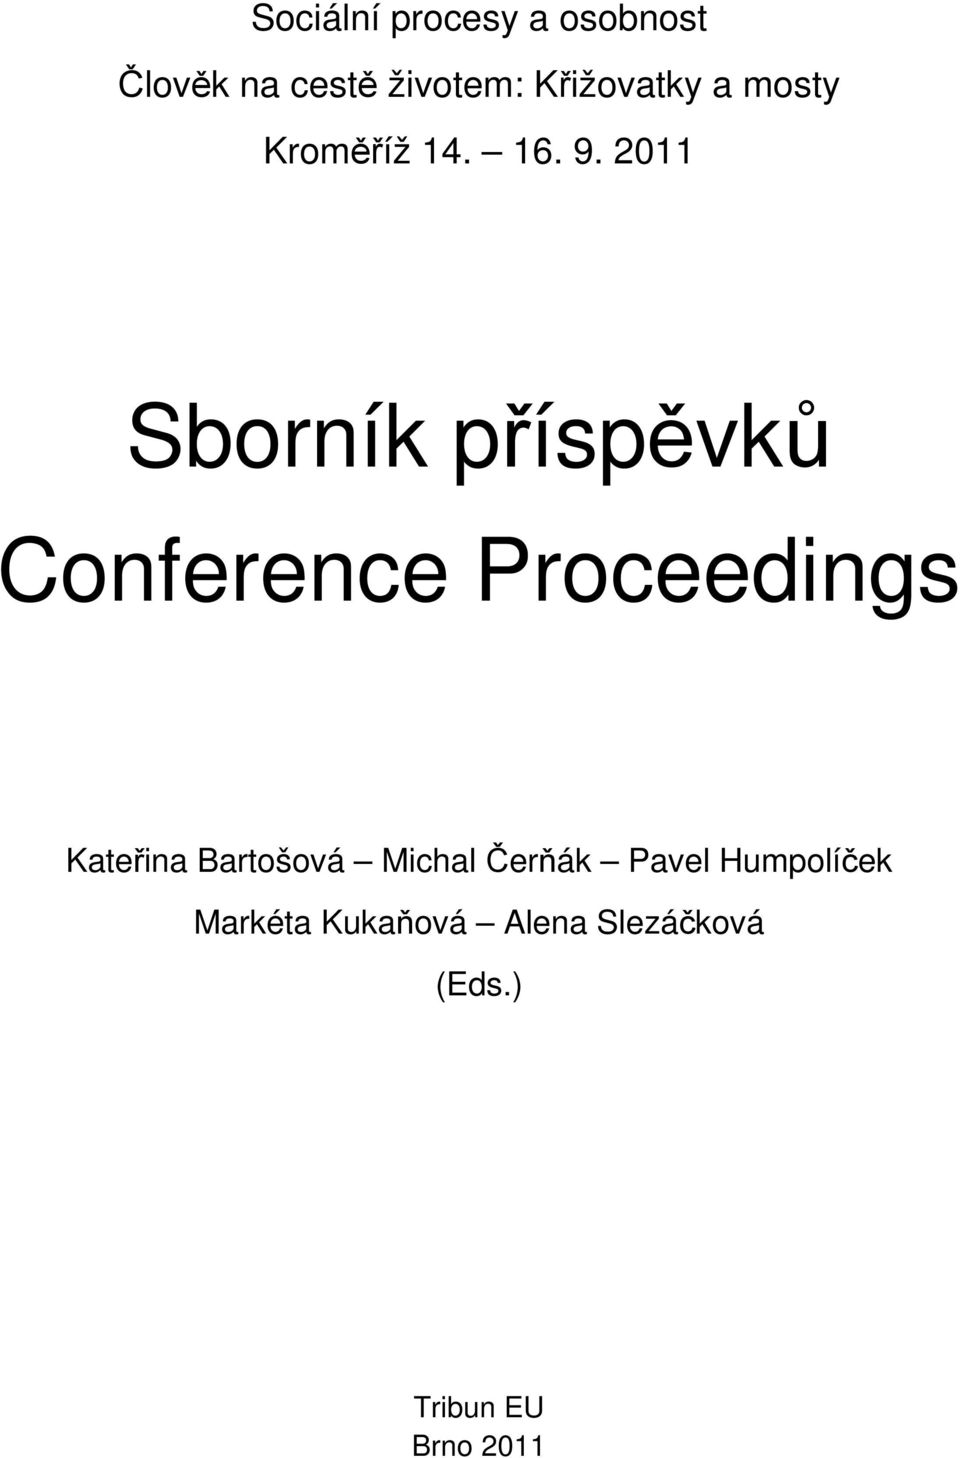 Sborník příspěvků Conference Proceedings - PDF Free Download